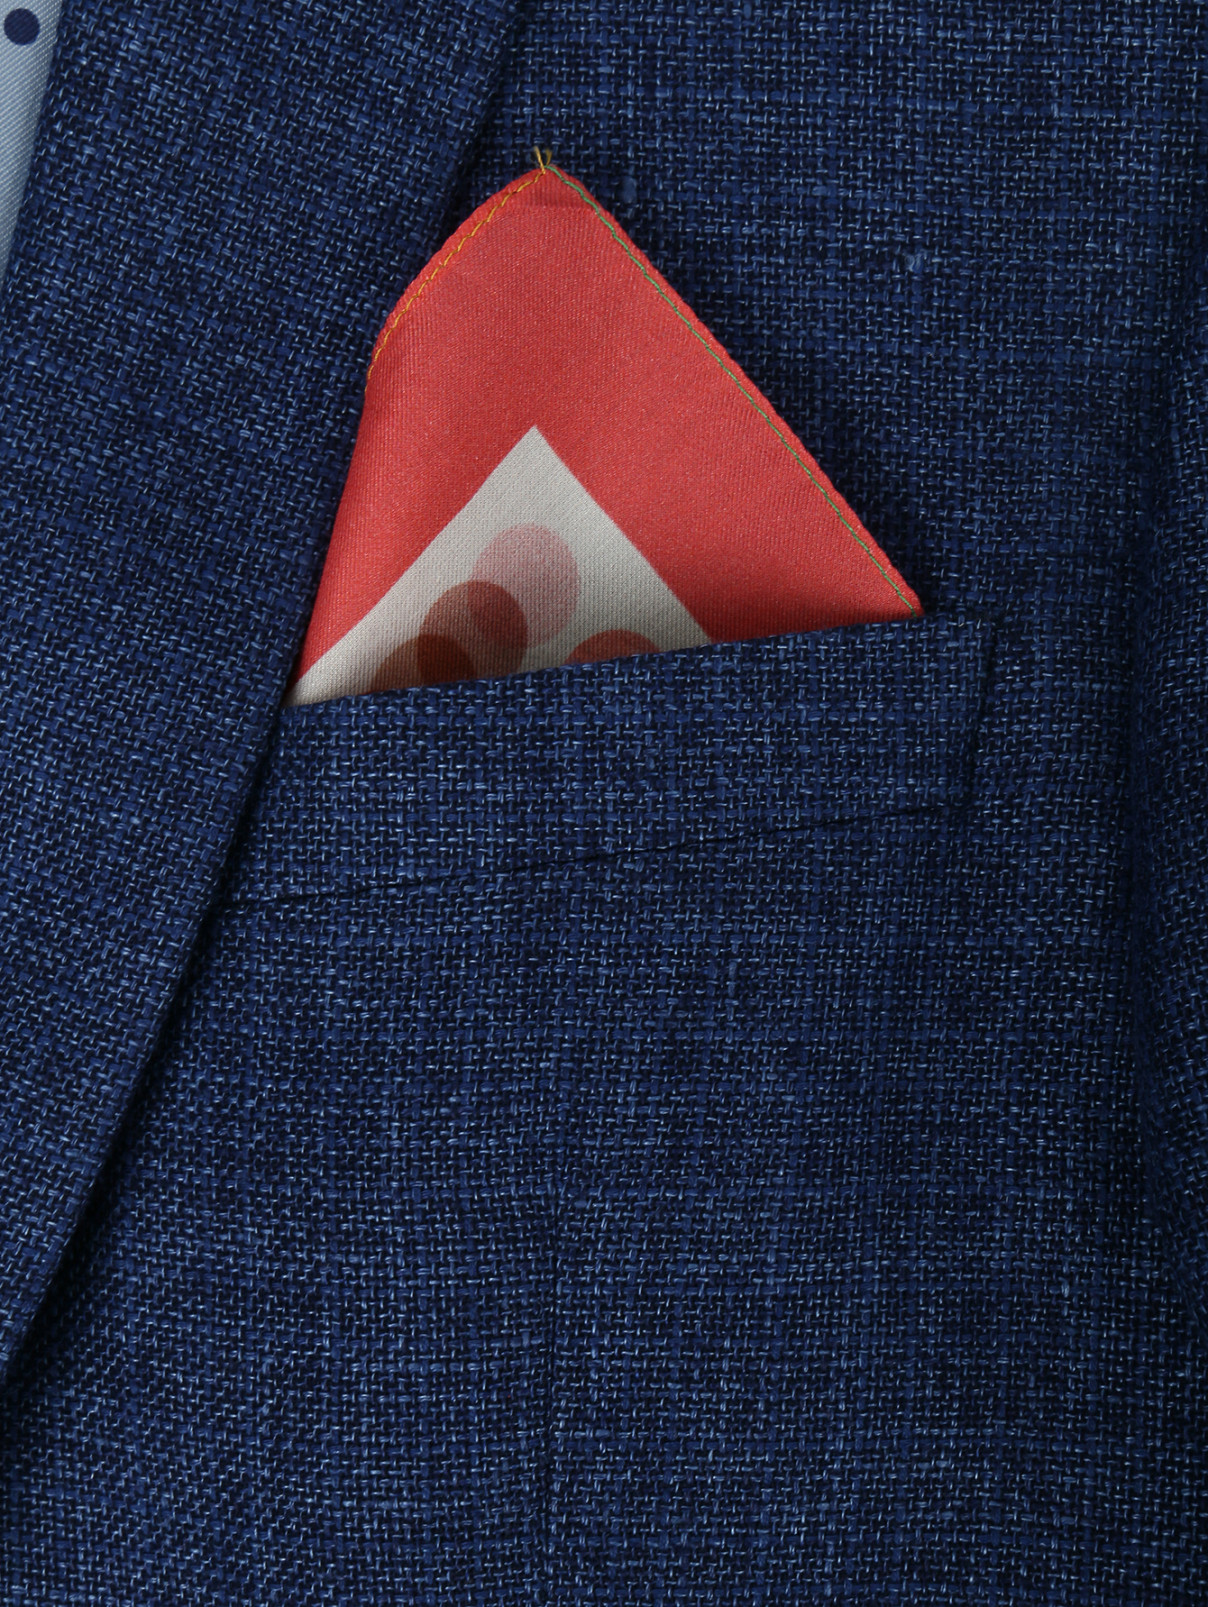 Платок из хлопка и шелка Faliero Sarti  –  Модель Общий вид  – Цвет:  Мультиколор